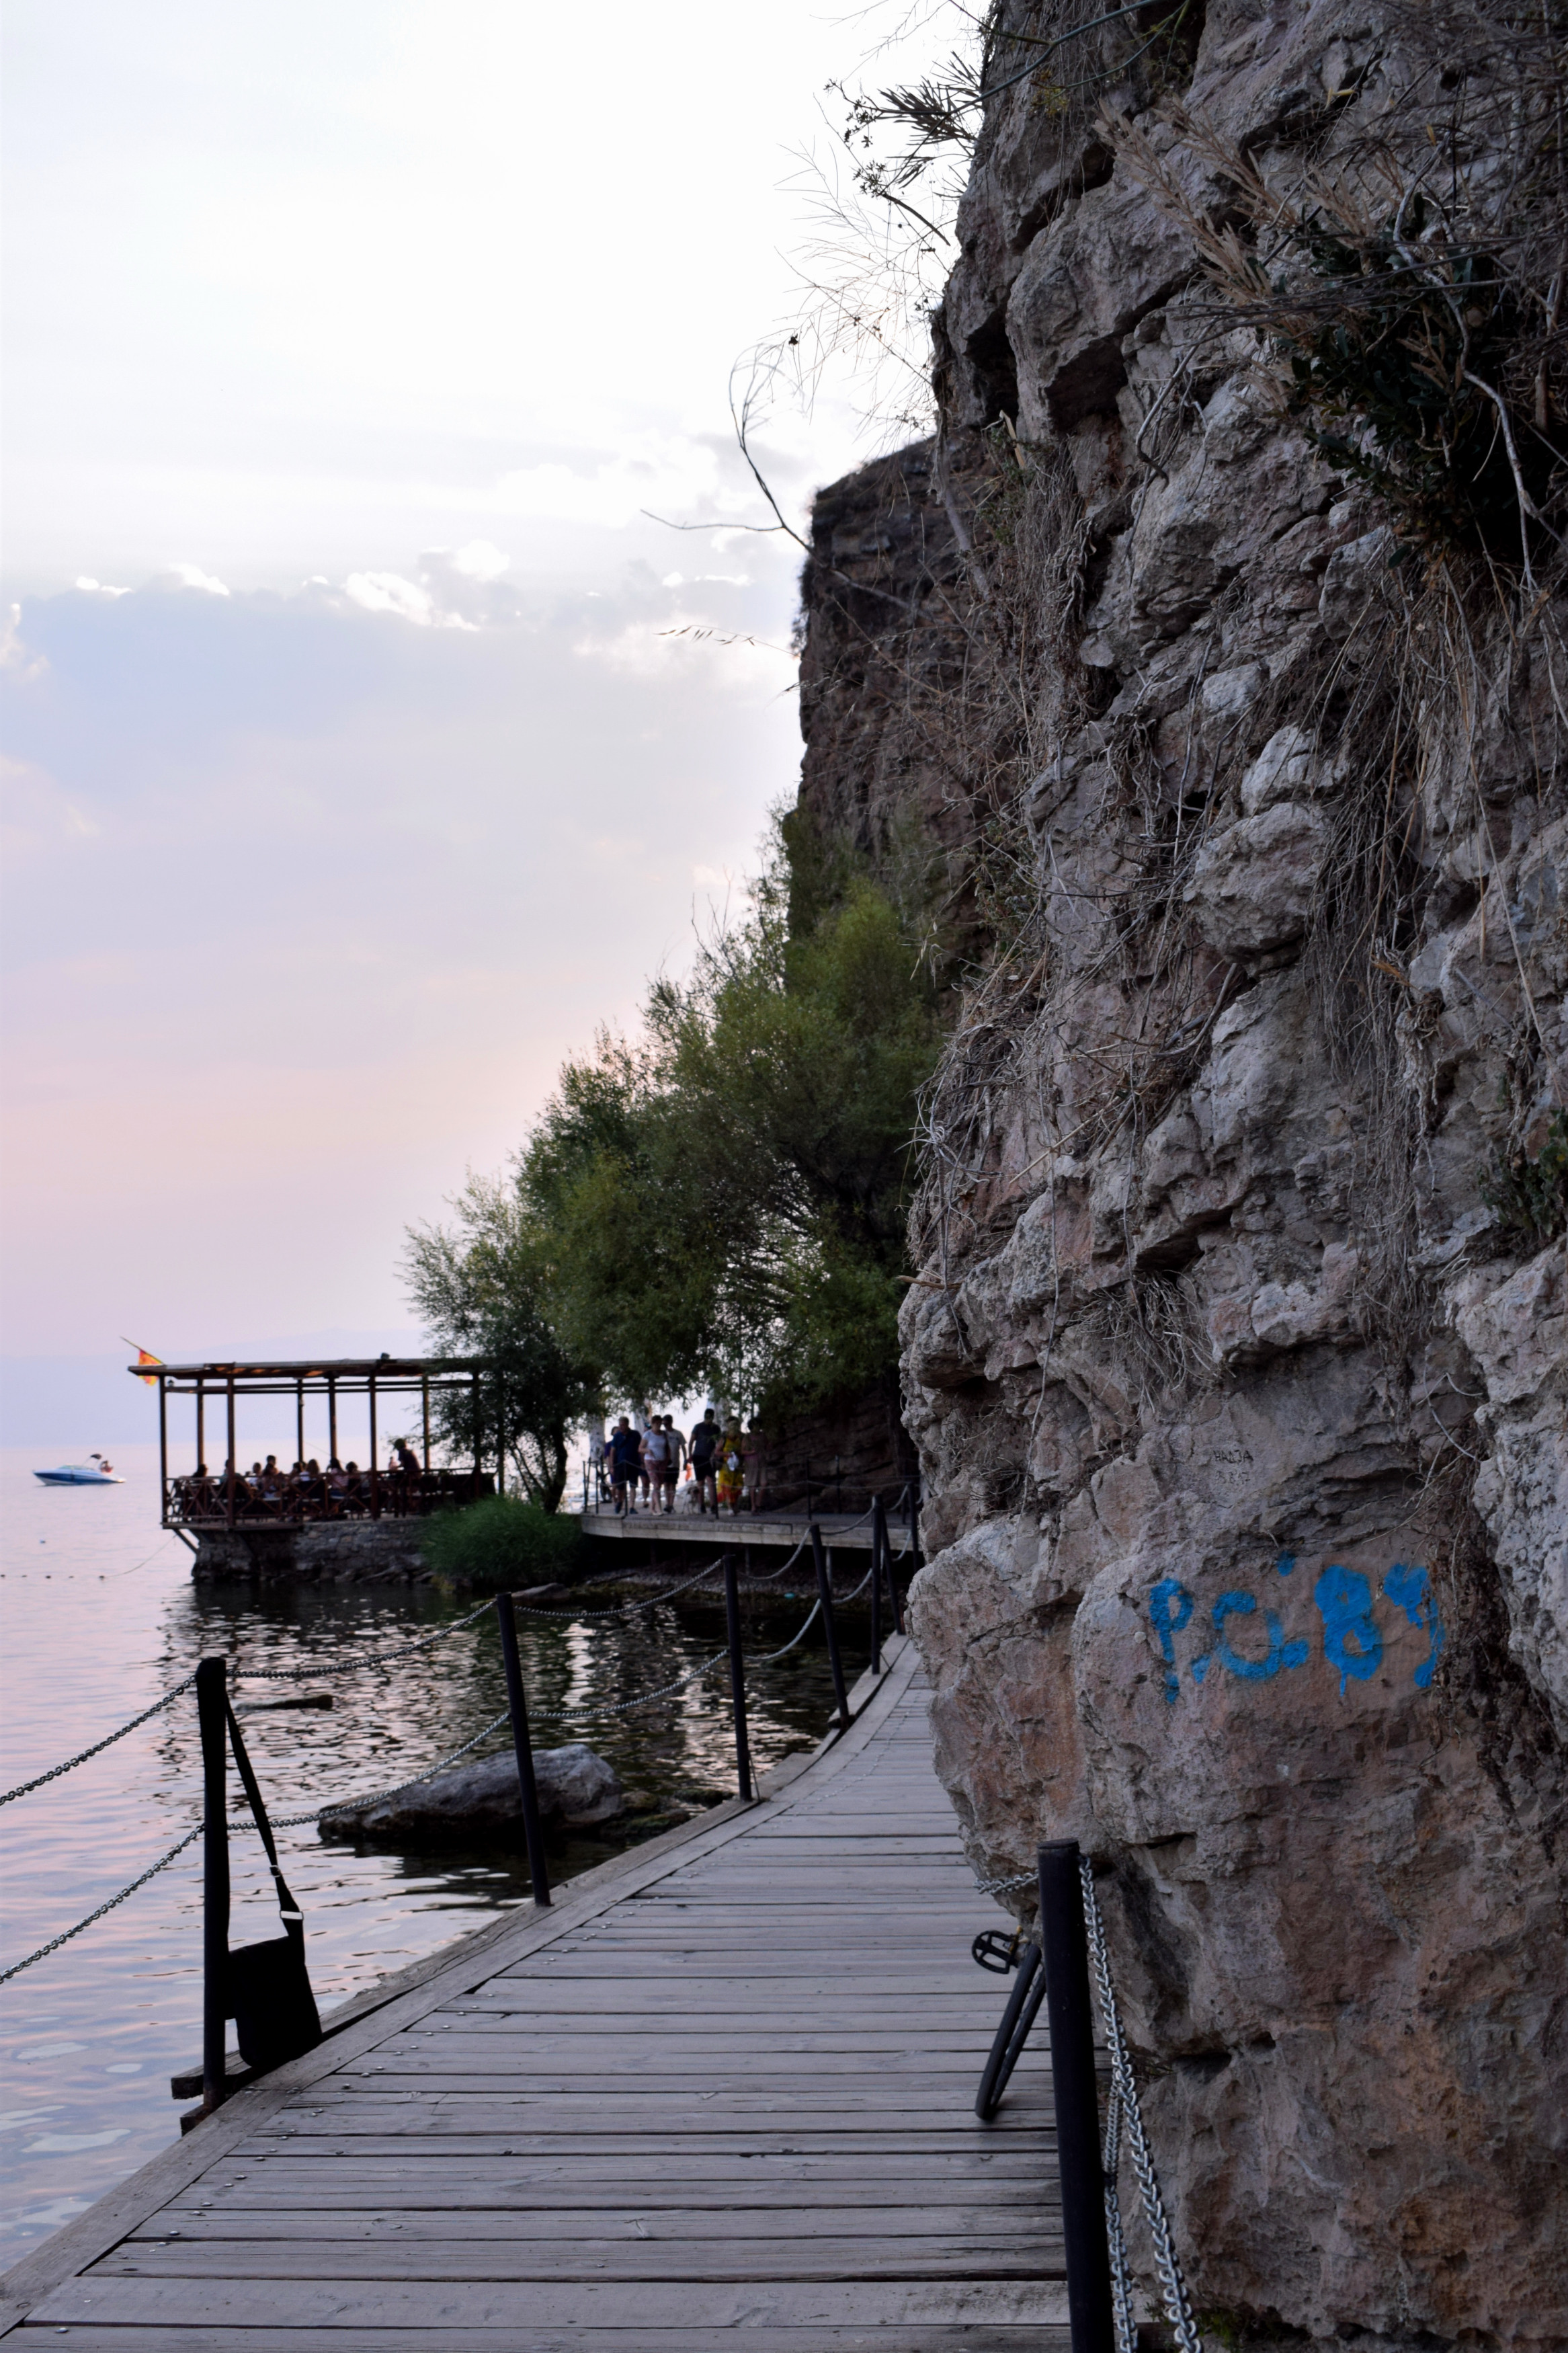 A stég mellett húzódó sziklafal is nagyon szép, érdemes kicsit jobban megnézni a rajta élő növényeket is. &lt;br /&gt;A tó nagyon gyorsan mélyül, és Ohrid környékén -legalábbis ahol én jártam- kisebb-nagyobb kövecskék vannak az alján. Érdemes valamilyen tengerjáró cipőt vinni a fürdéshez. Ugyanakkor a műstégek itt általában zsúfolásig tele vannak, így nem a legjobb élmény itt fürdeni. 